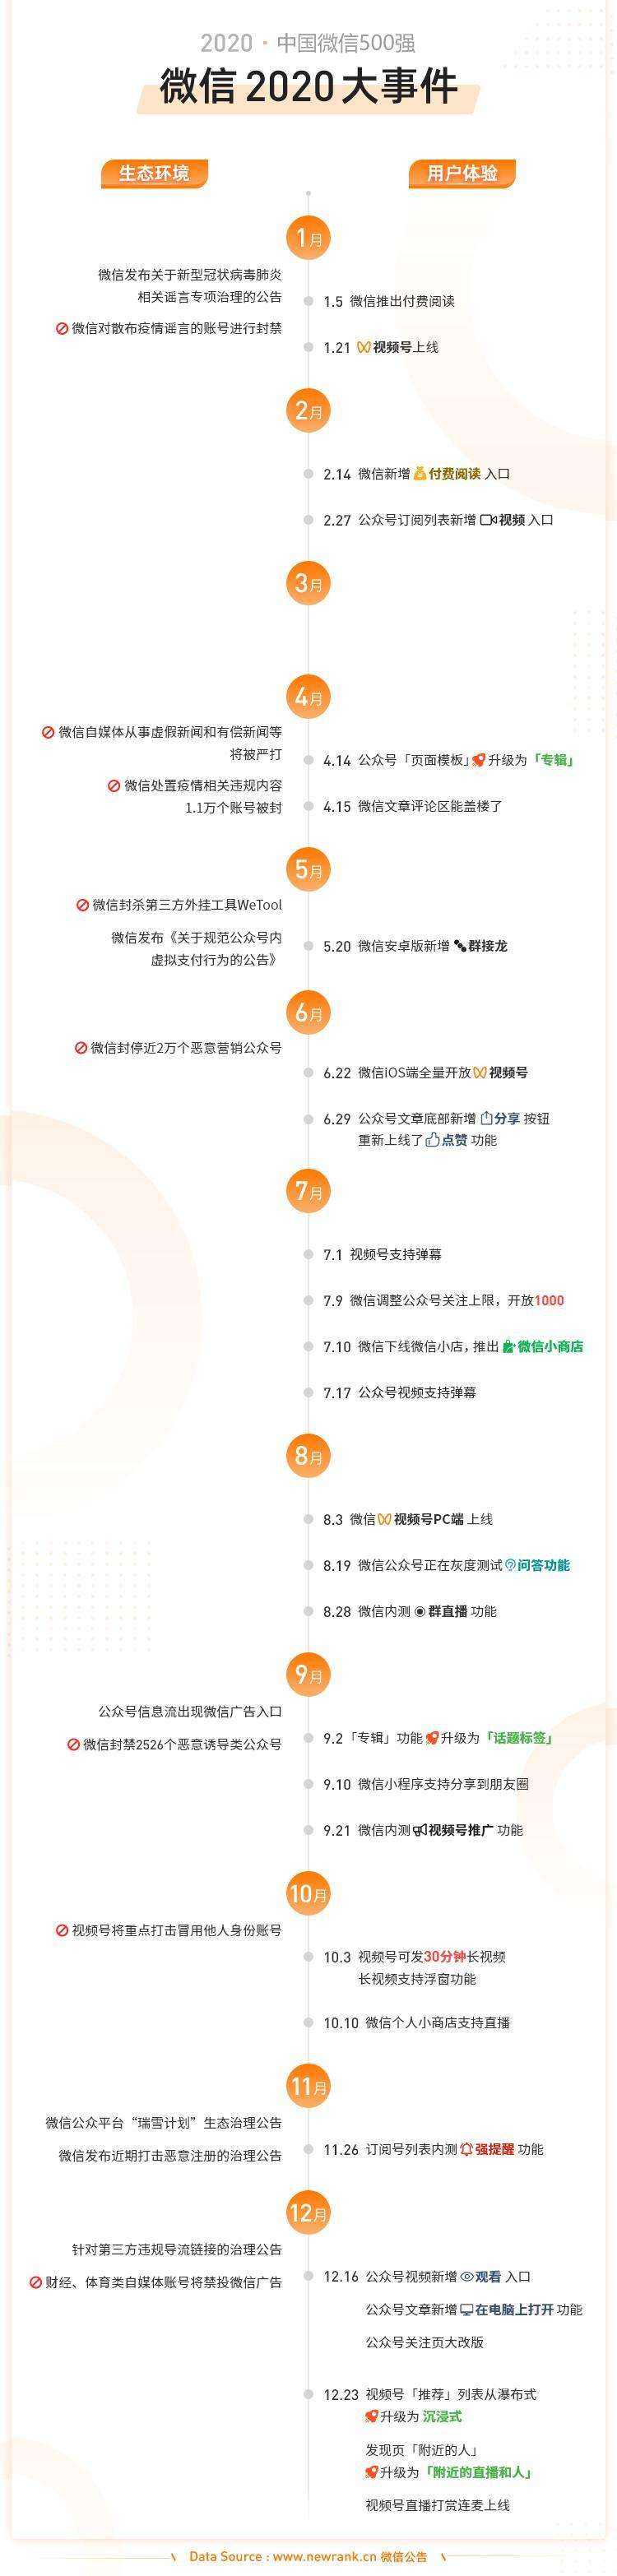 2020中国微信500强年报 | 新榜出品-第24张图片-周小辉博客